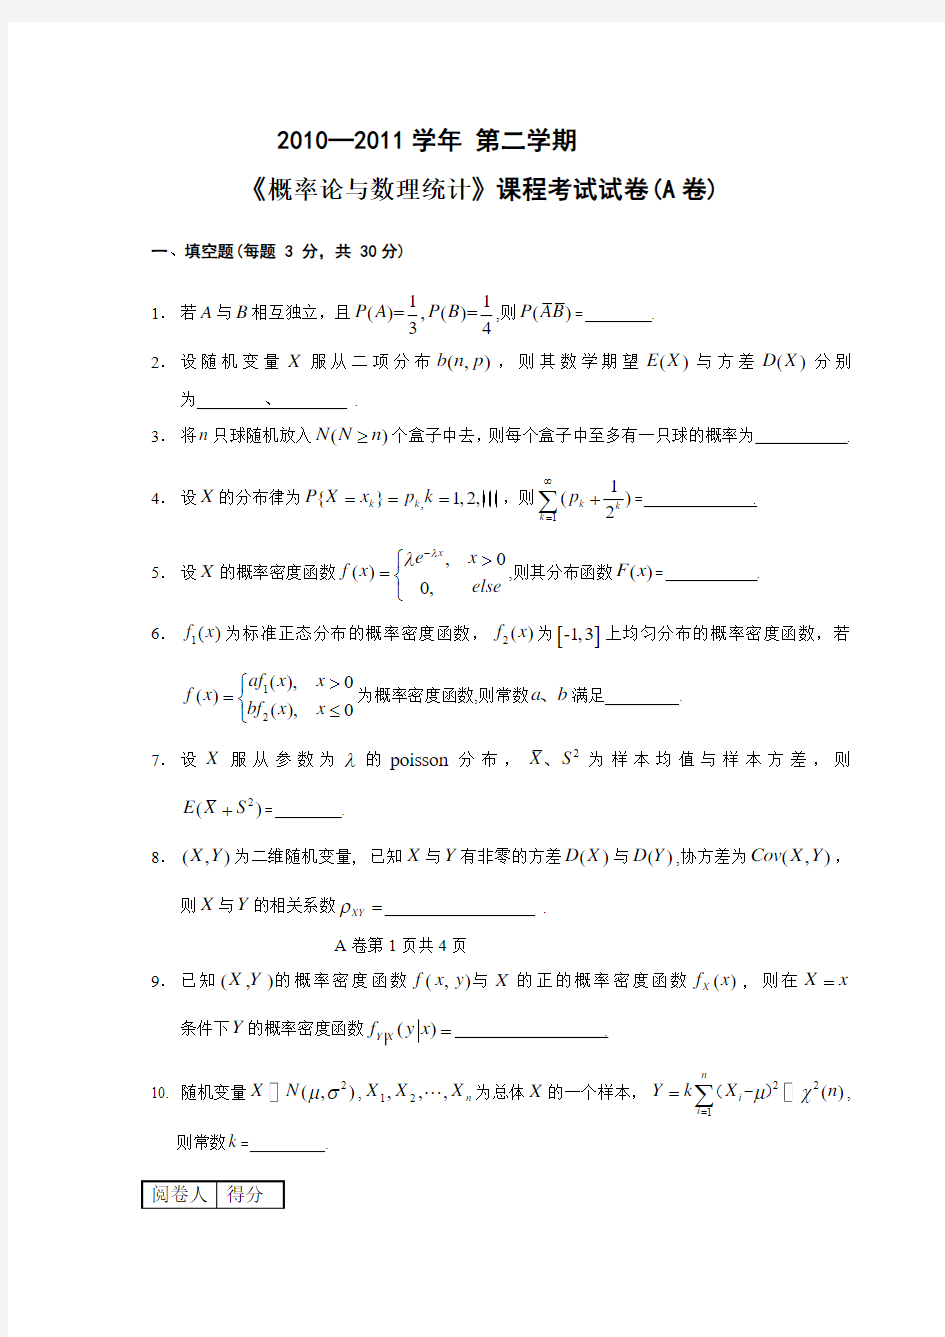 长江大学概率论与数理统计